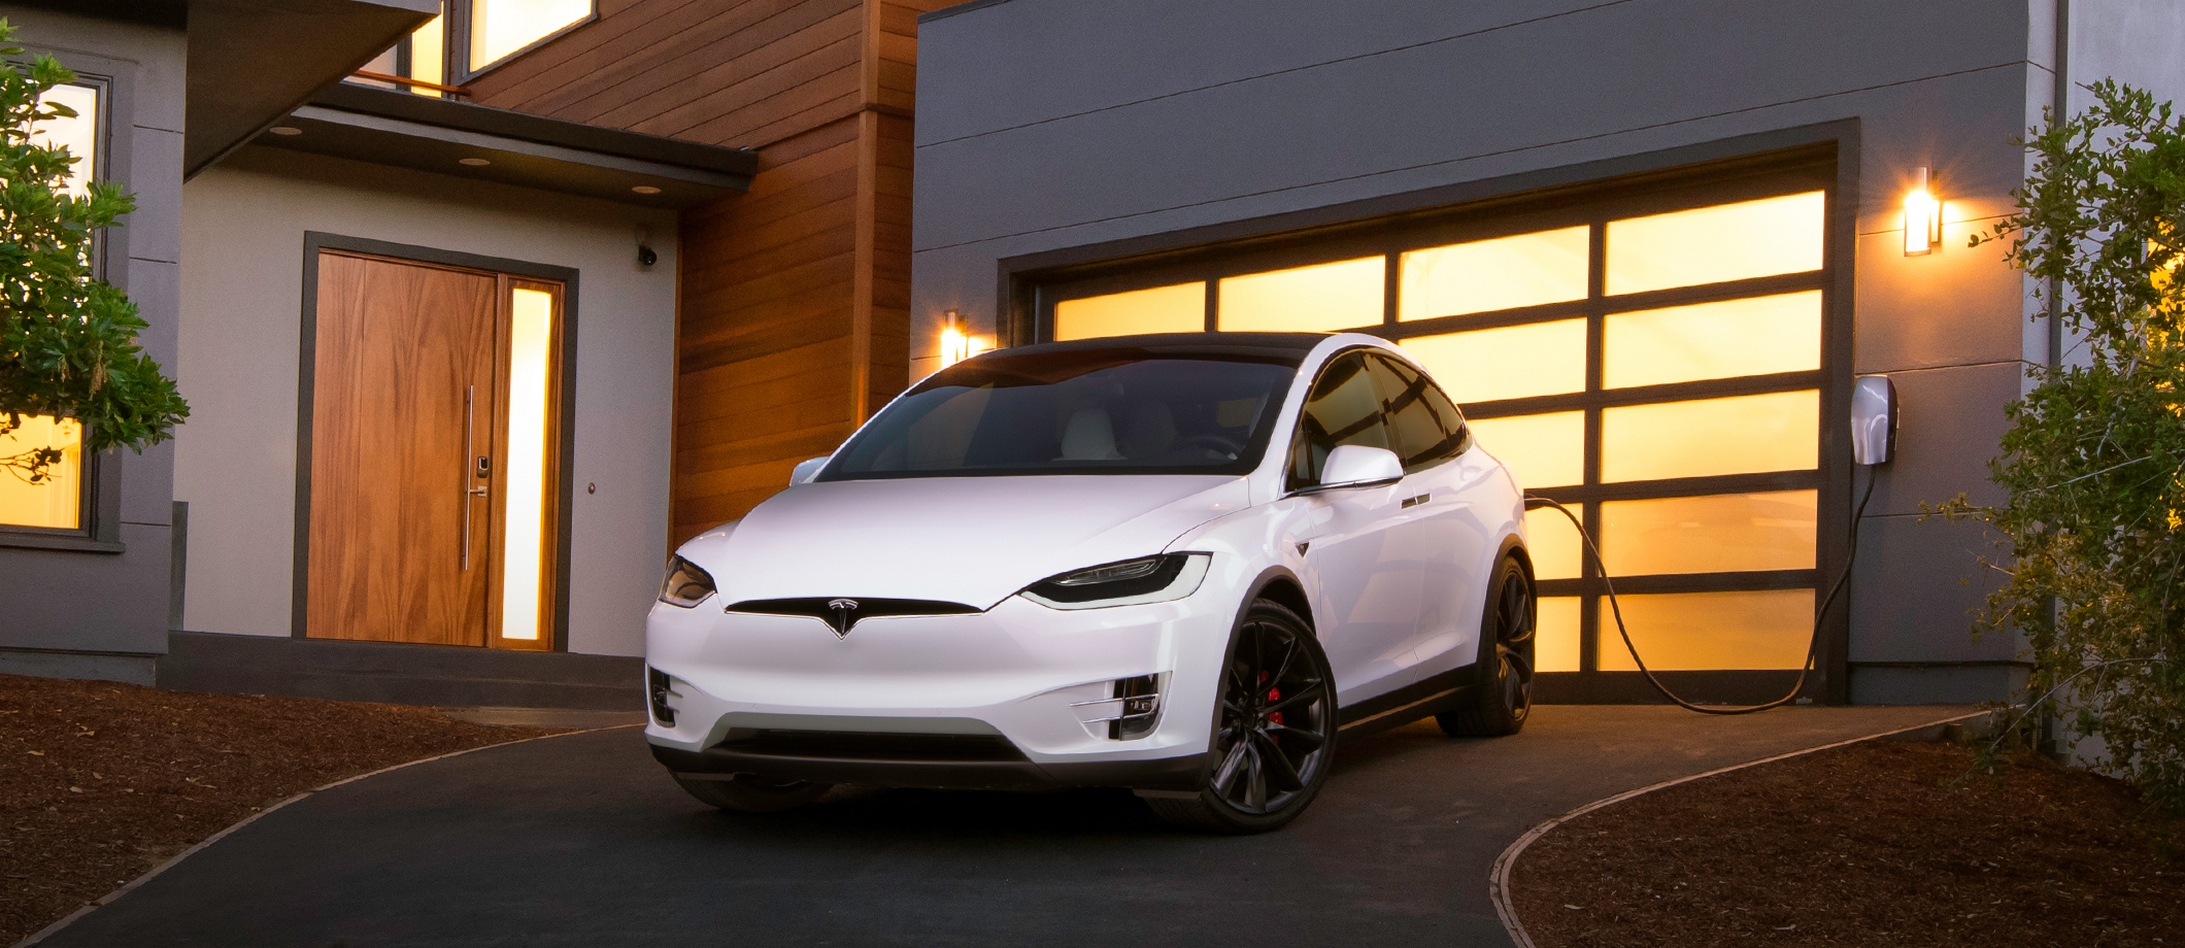 Le Vehicle to Grid, ou la restitution de l’énergie d’une voiture électrique dans le réseau, sera peut-être prochainement possible chez Tesla. © Tesla